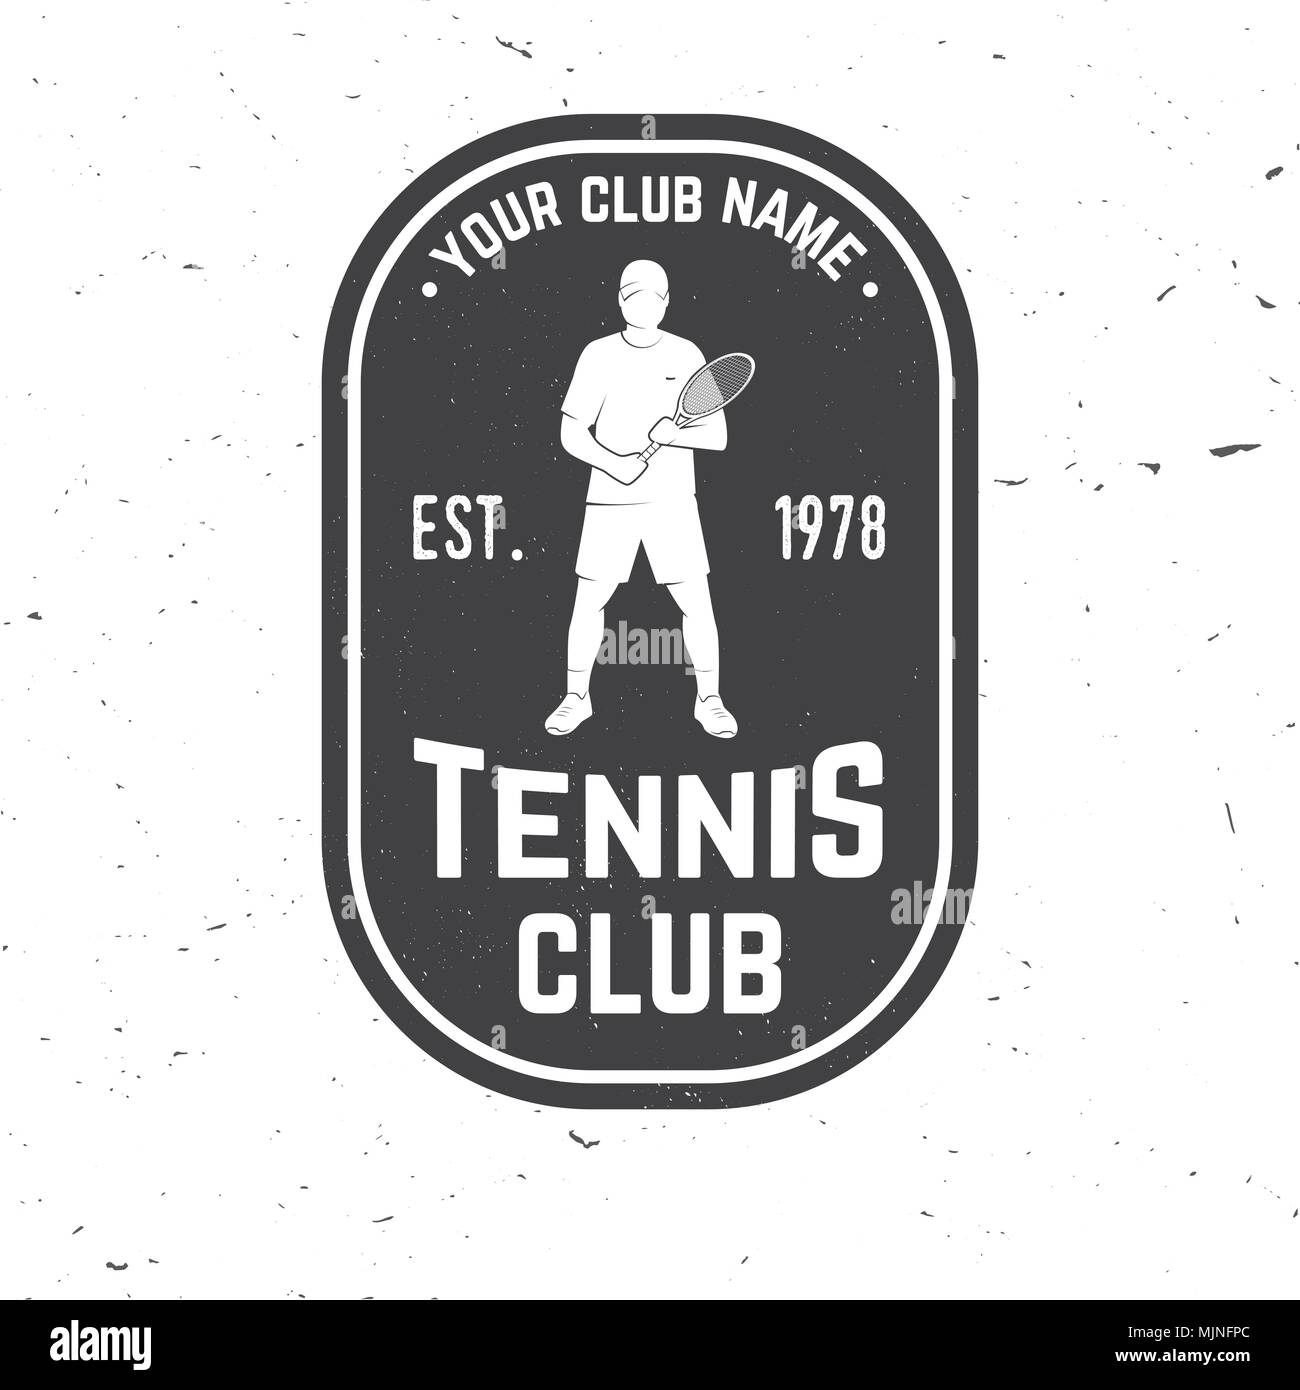 Tennis Club badge. Vector illustration. Concept pour chemise, imprimer, stamp ou tee. Typographie vintage design avec tennis player silhouette. Illustration de Vecteur